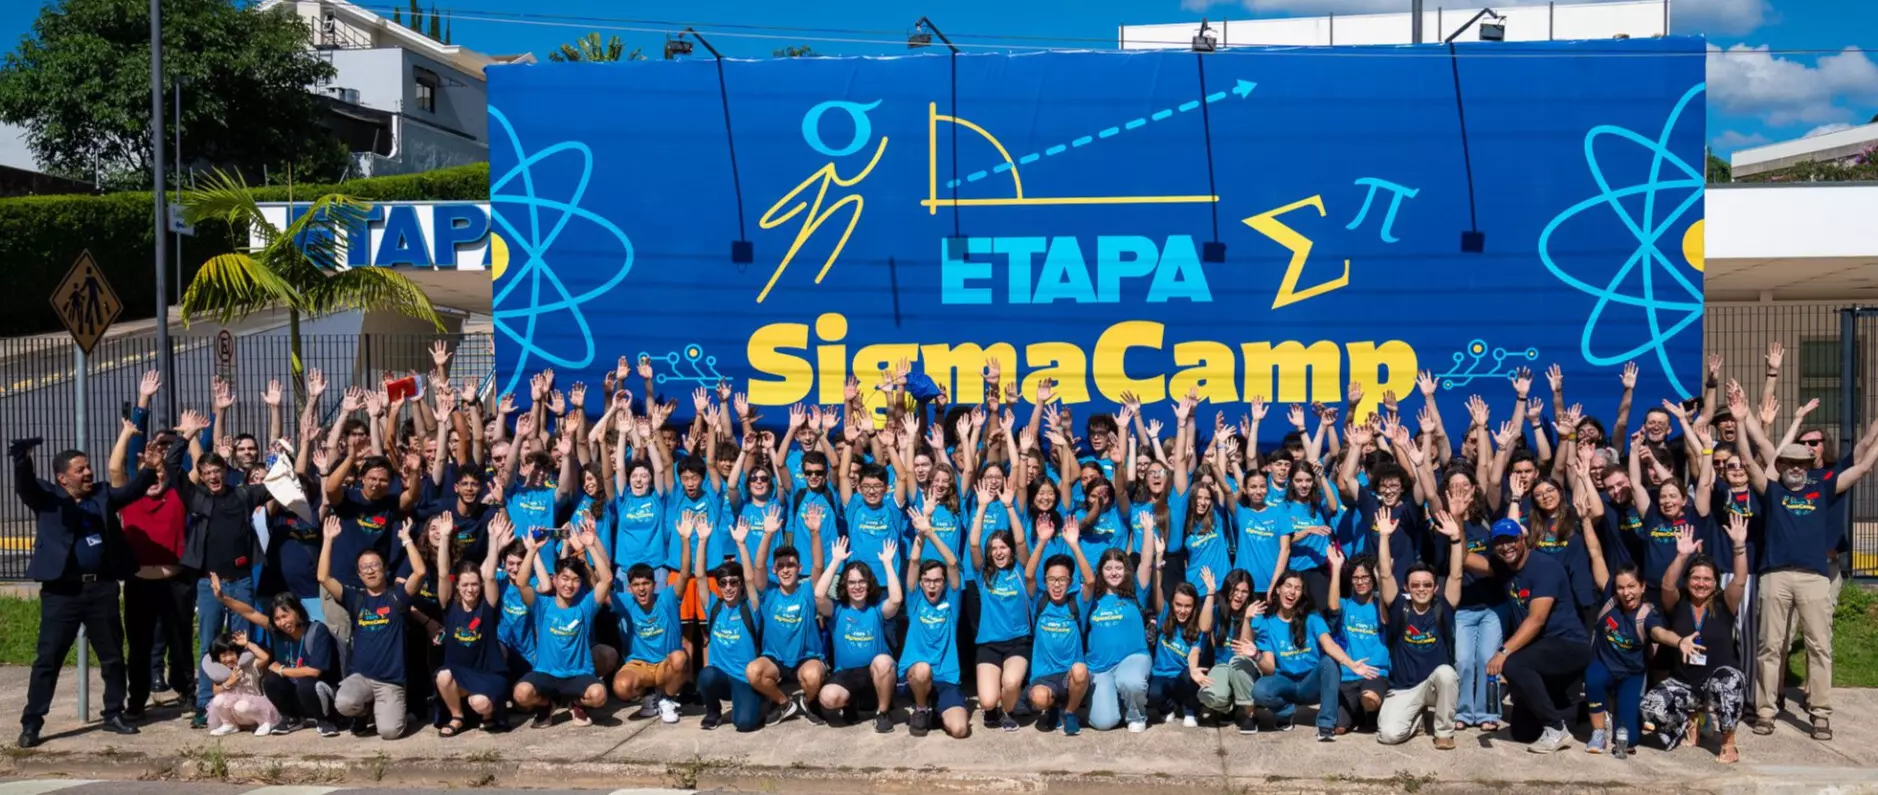 Etapa SigmaCamp reúne alunos para programa de imersão STEM